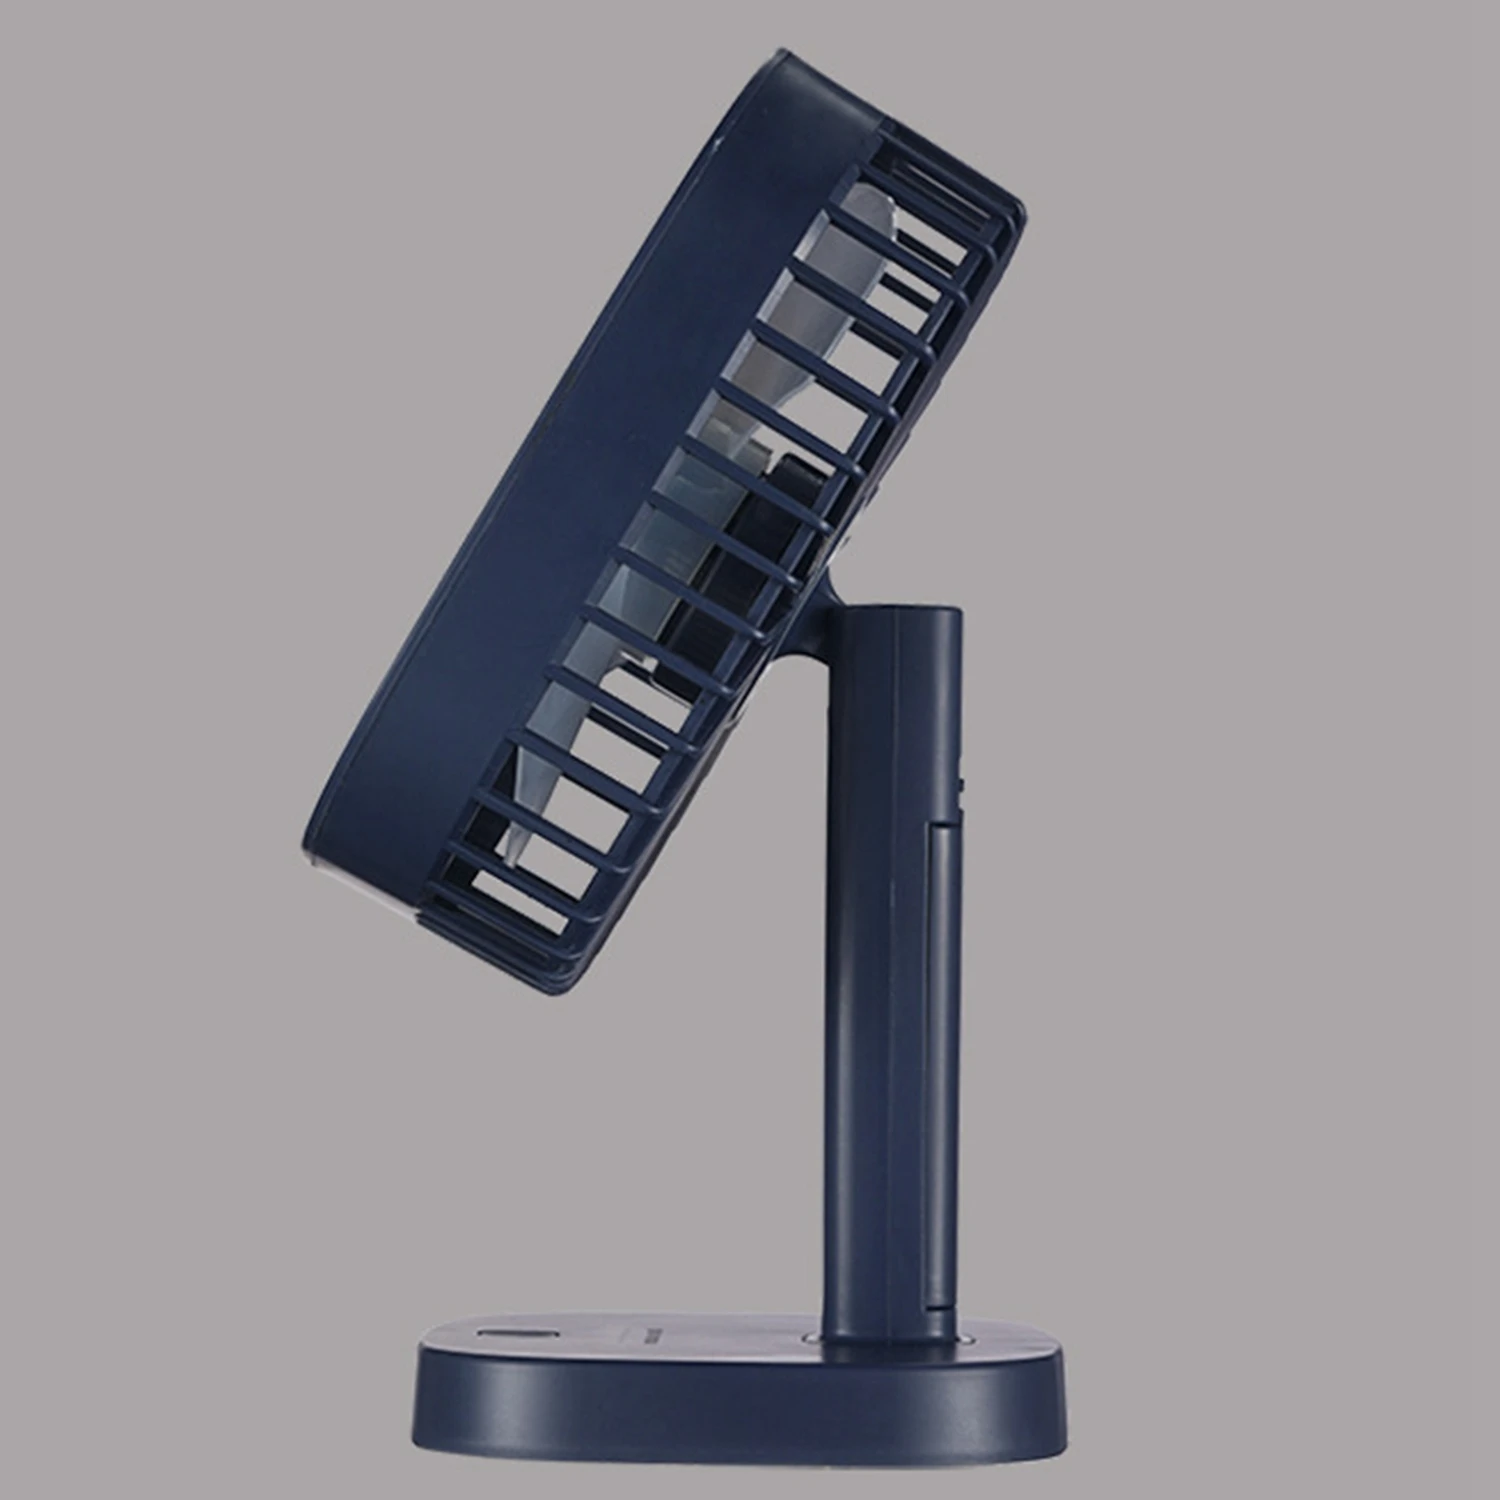 USB портативный вентилятор для шеи, подвесной перезаряжаемый мини-вентилятор для занятий спортом, 3 шестерни, кондиционер, регулируемый для дома